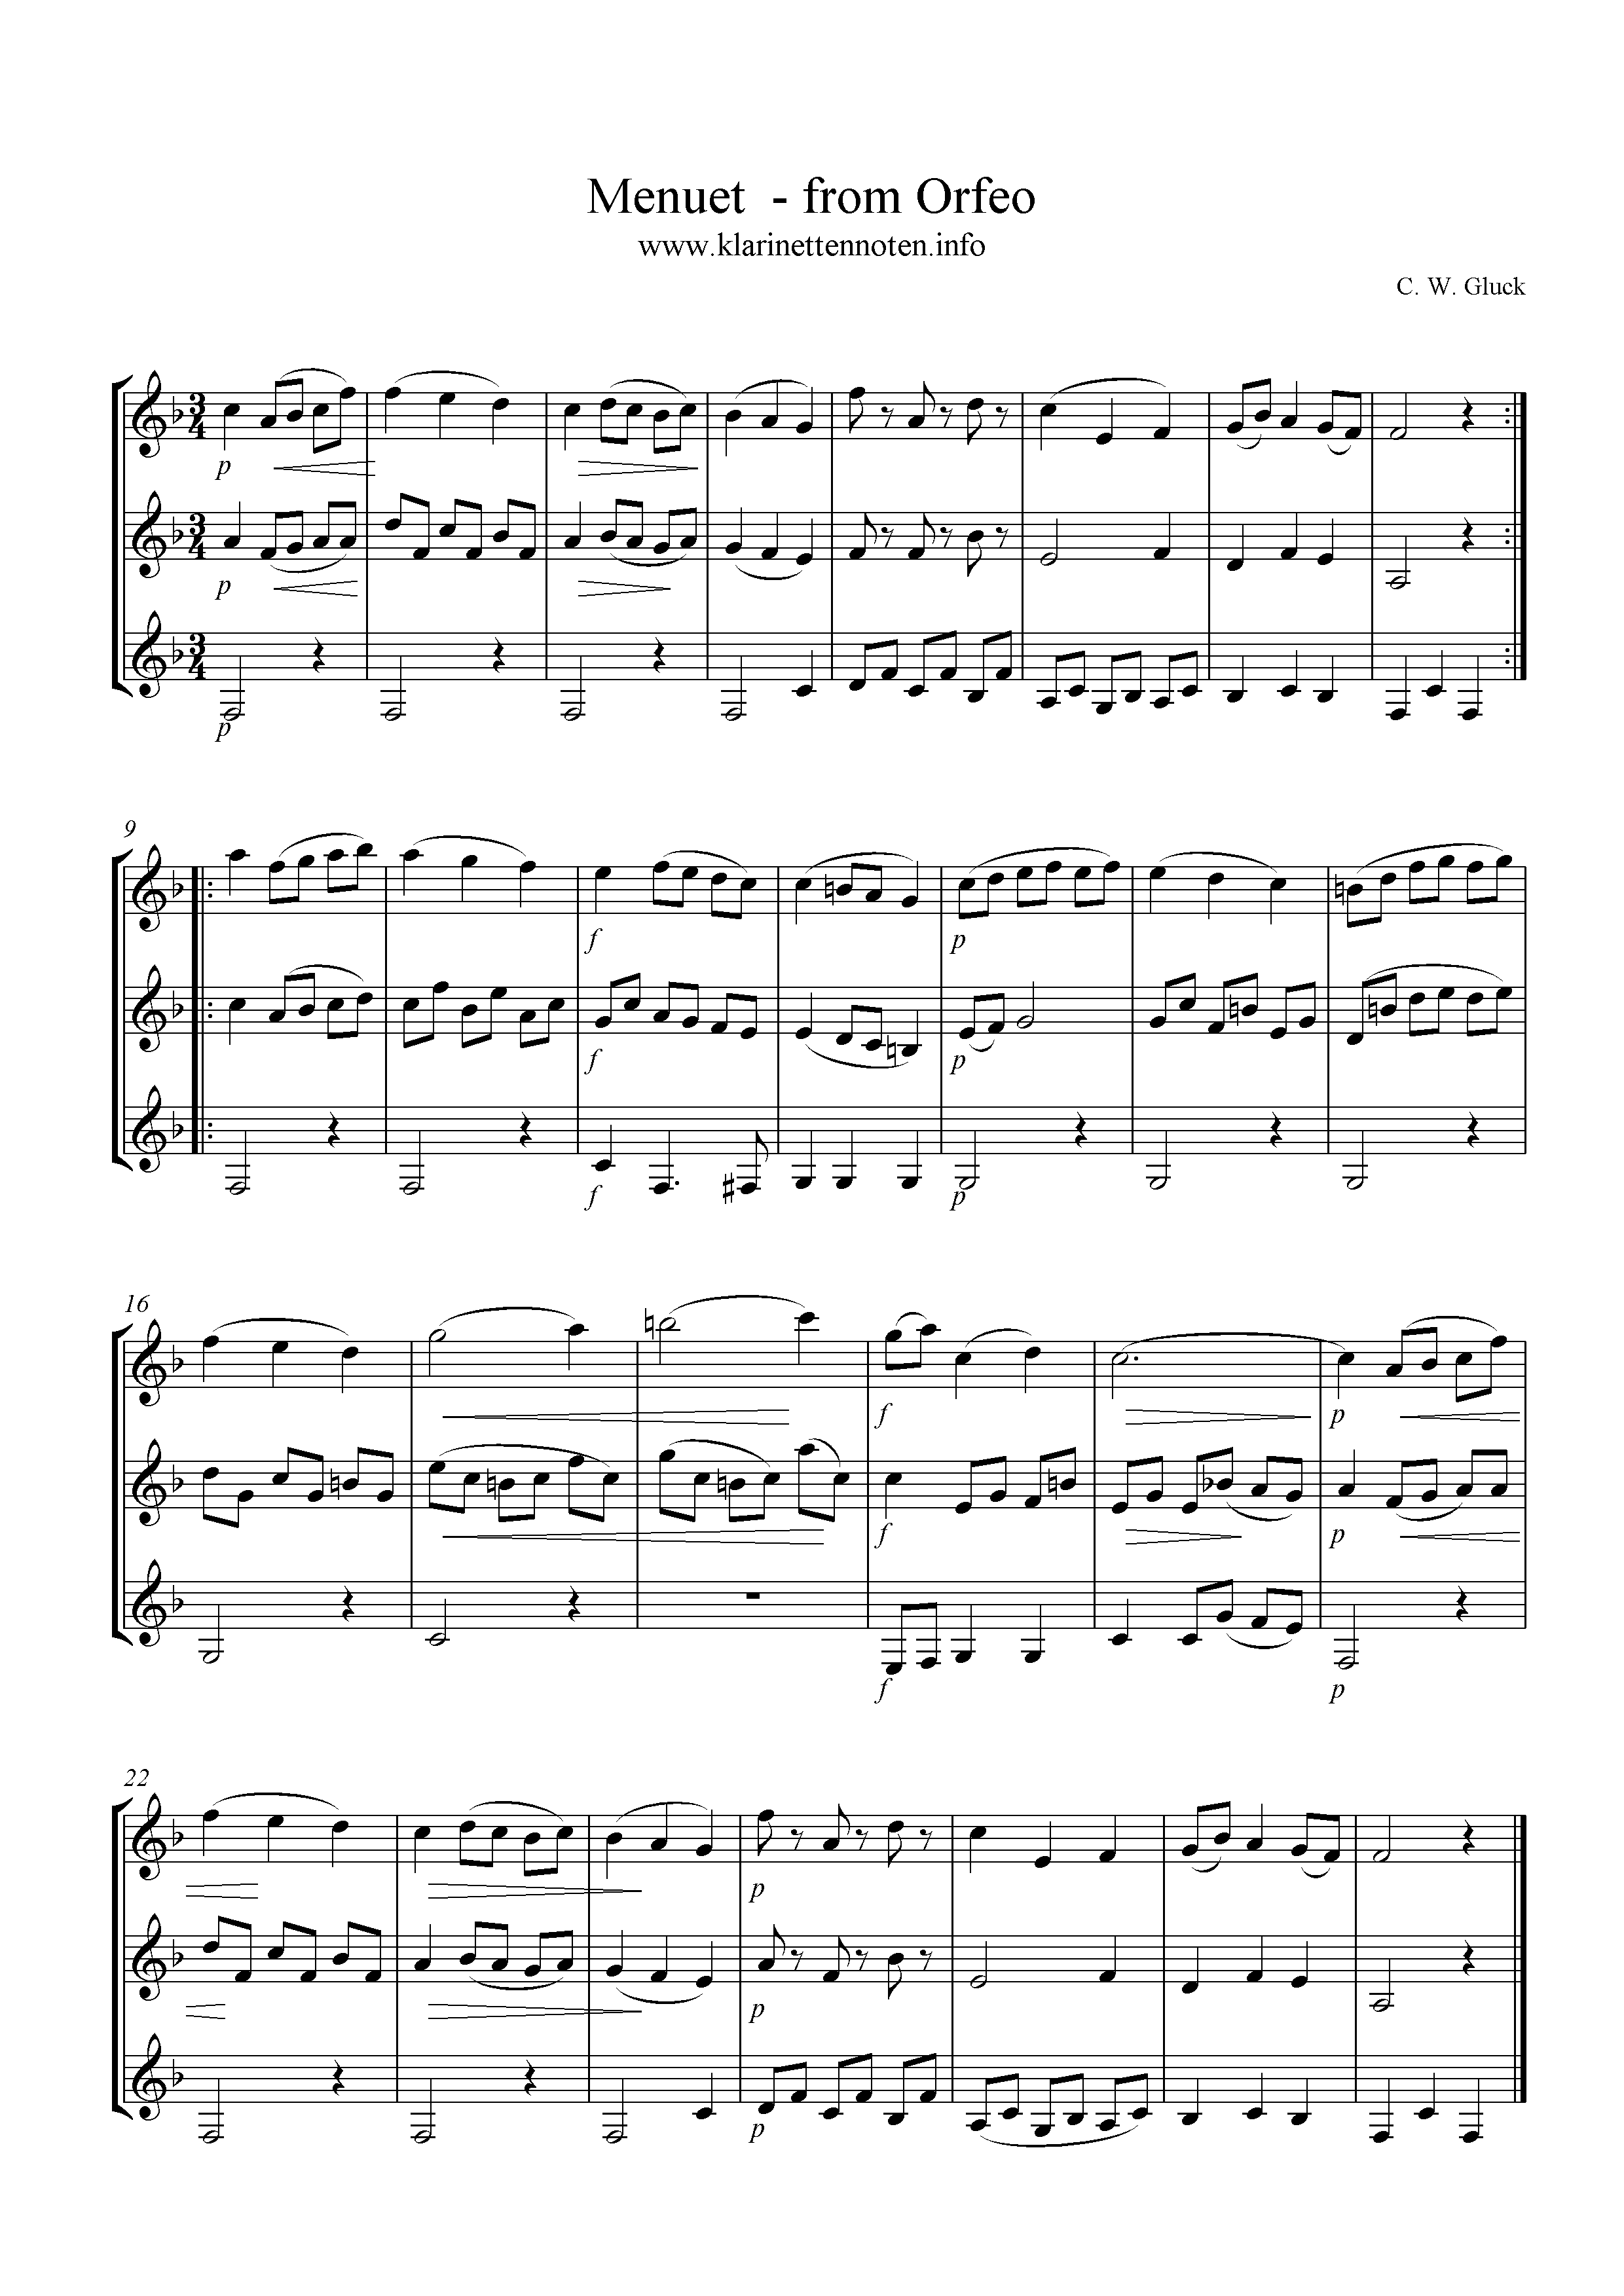 Menuet in F, Gluck, Clarinet Trio